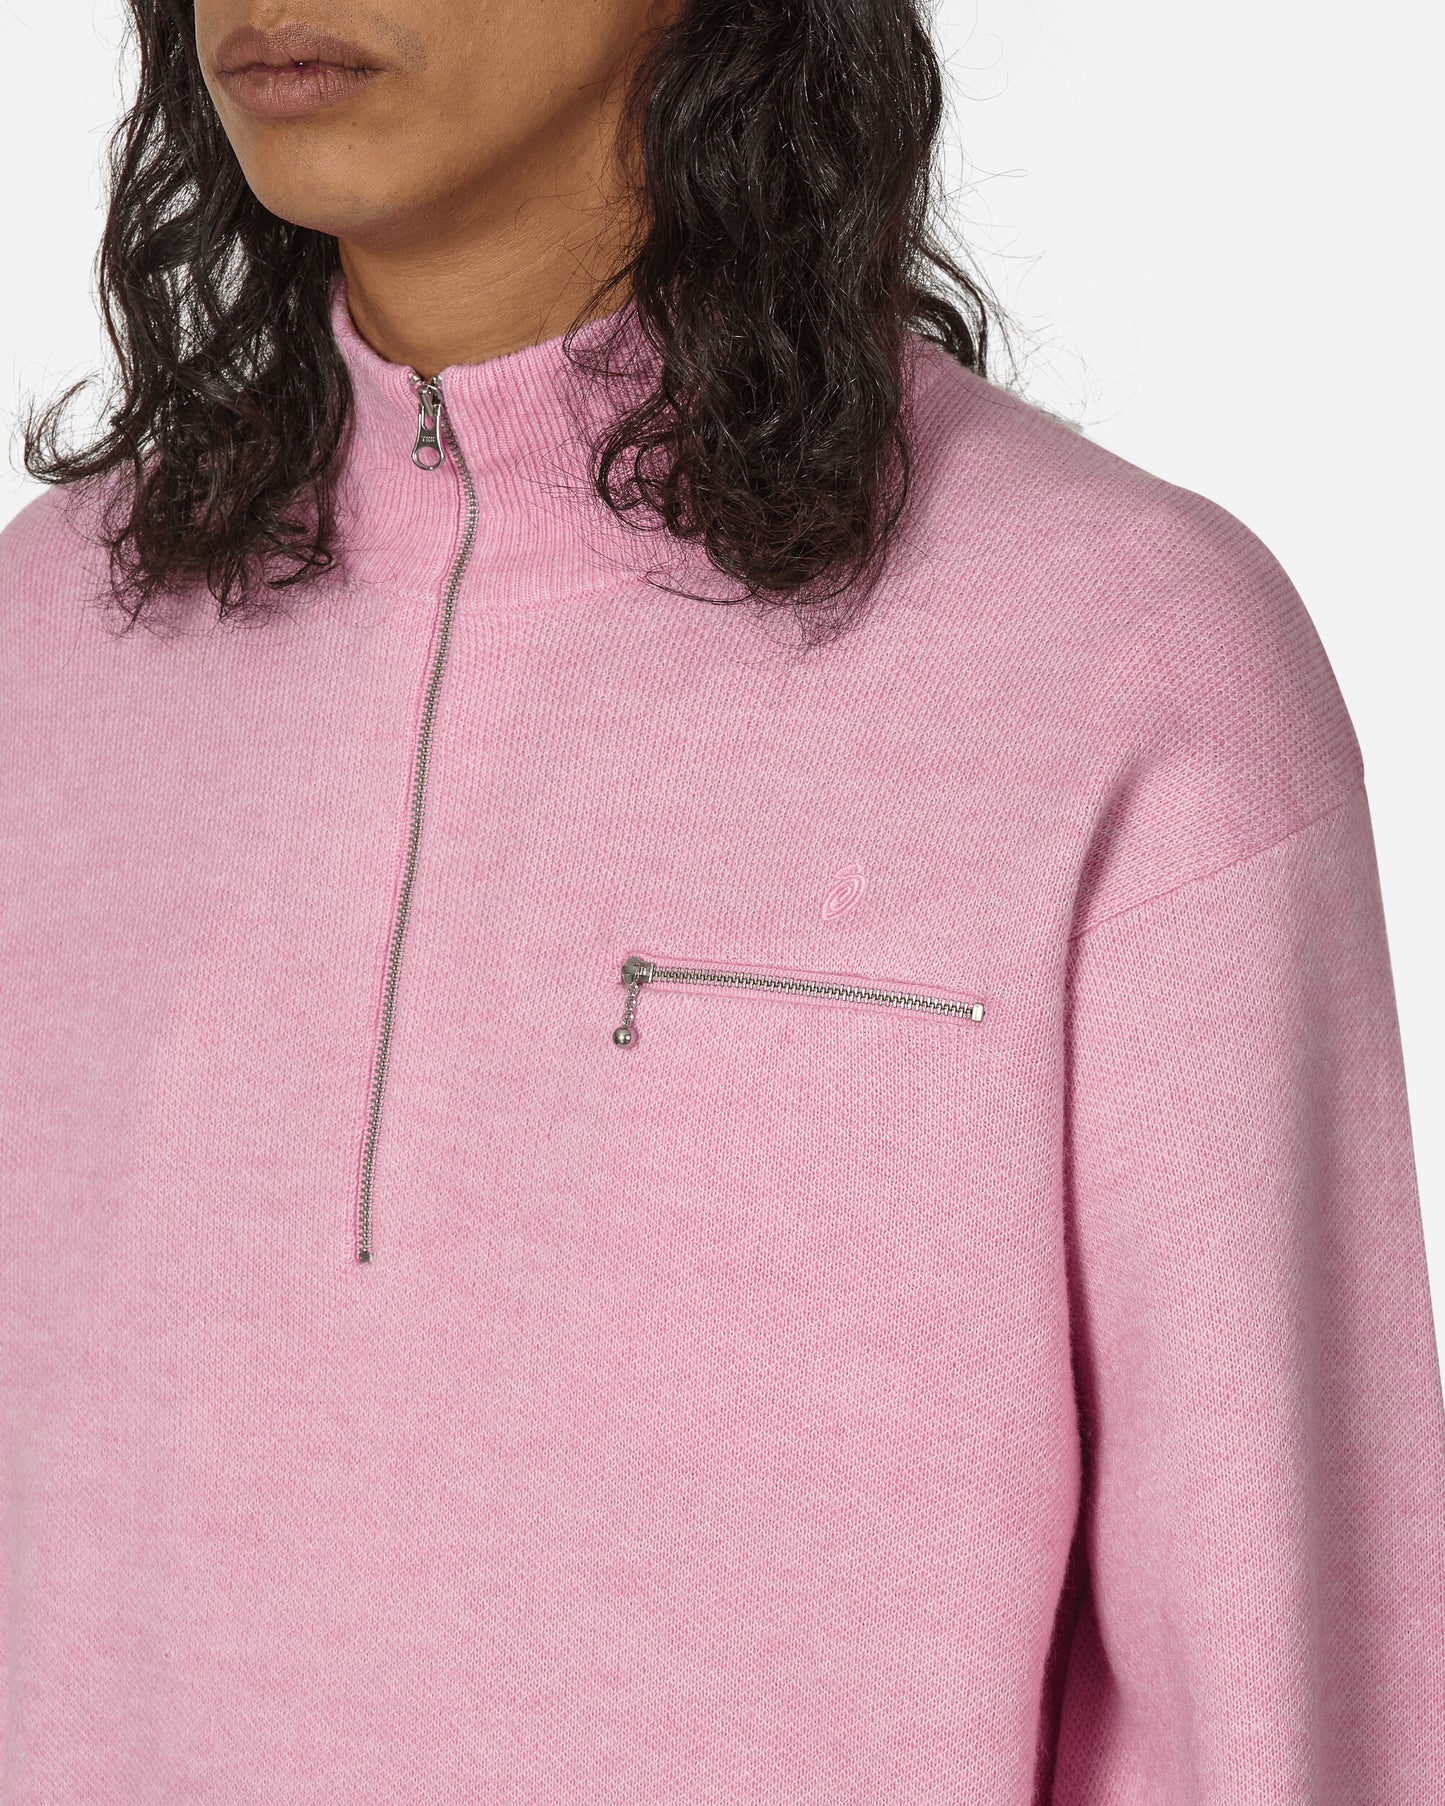 Stüssy Half Zip Mock Neck Sweater Pink Sweatshirts Zip-Ups 117219 0604